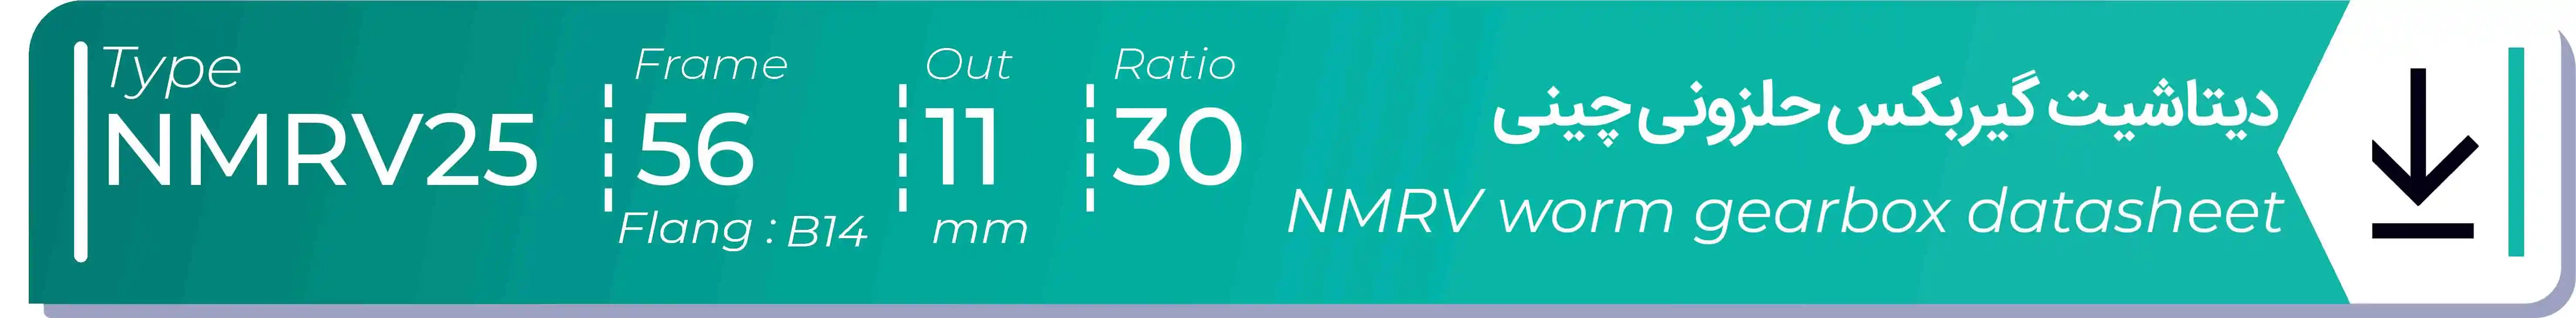  دیتاشیت و مشخصات فنی گیربکس حلزونی چینی   NMRV25  -  با خروجی 11- میلی متر و نسبت30